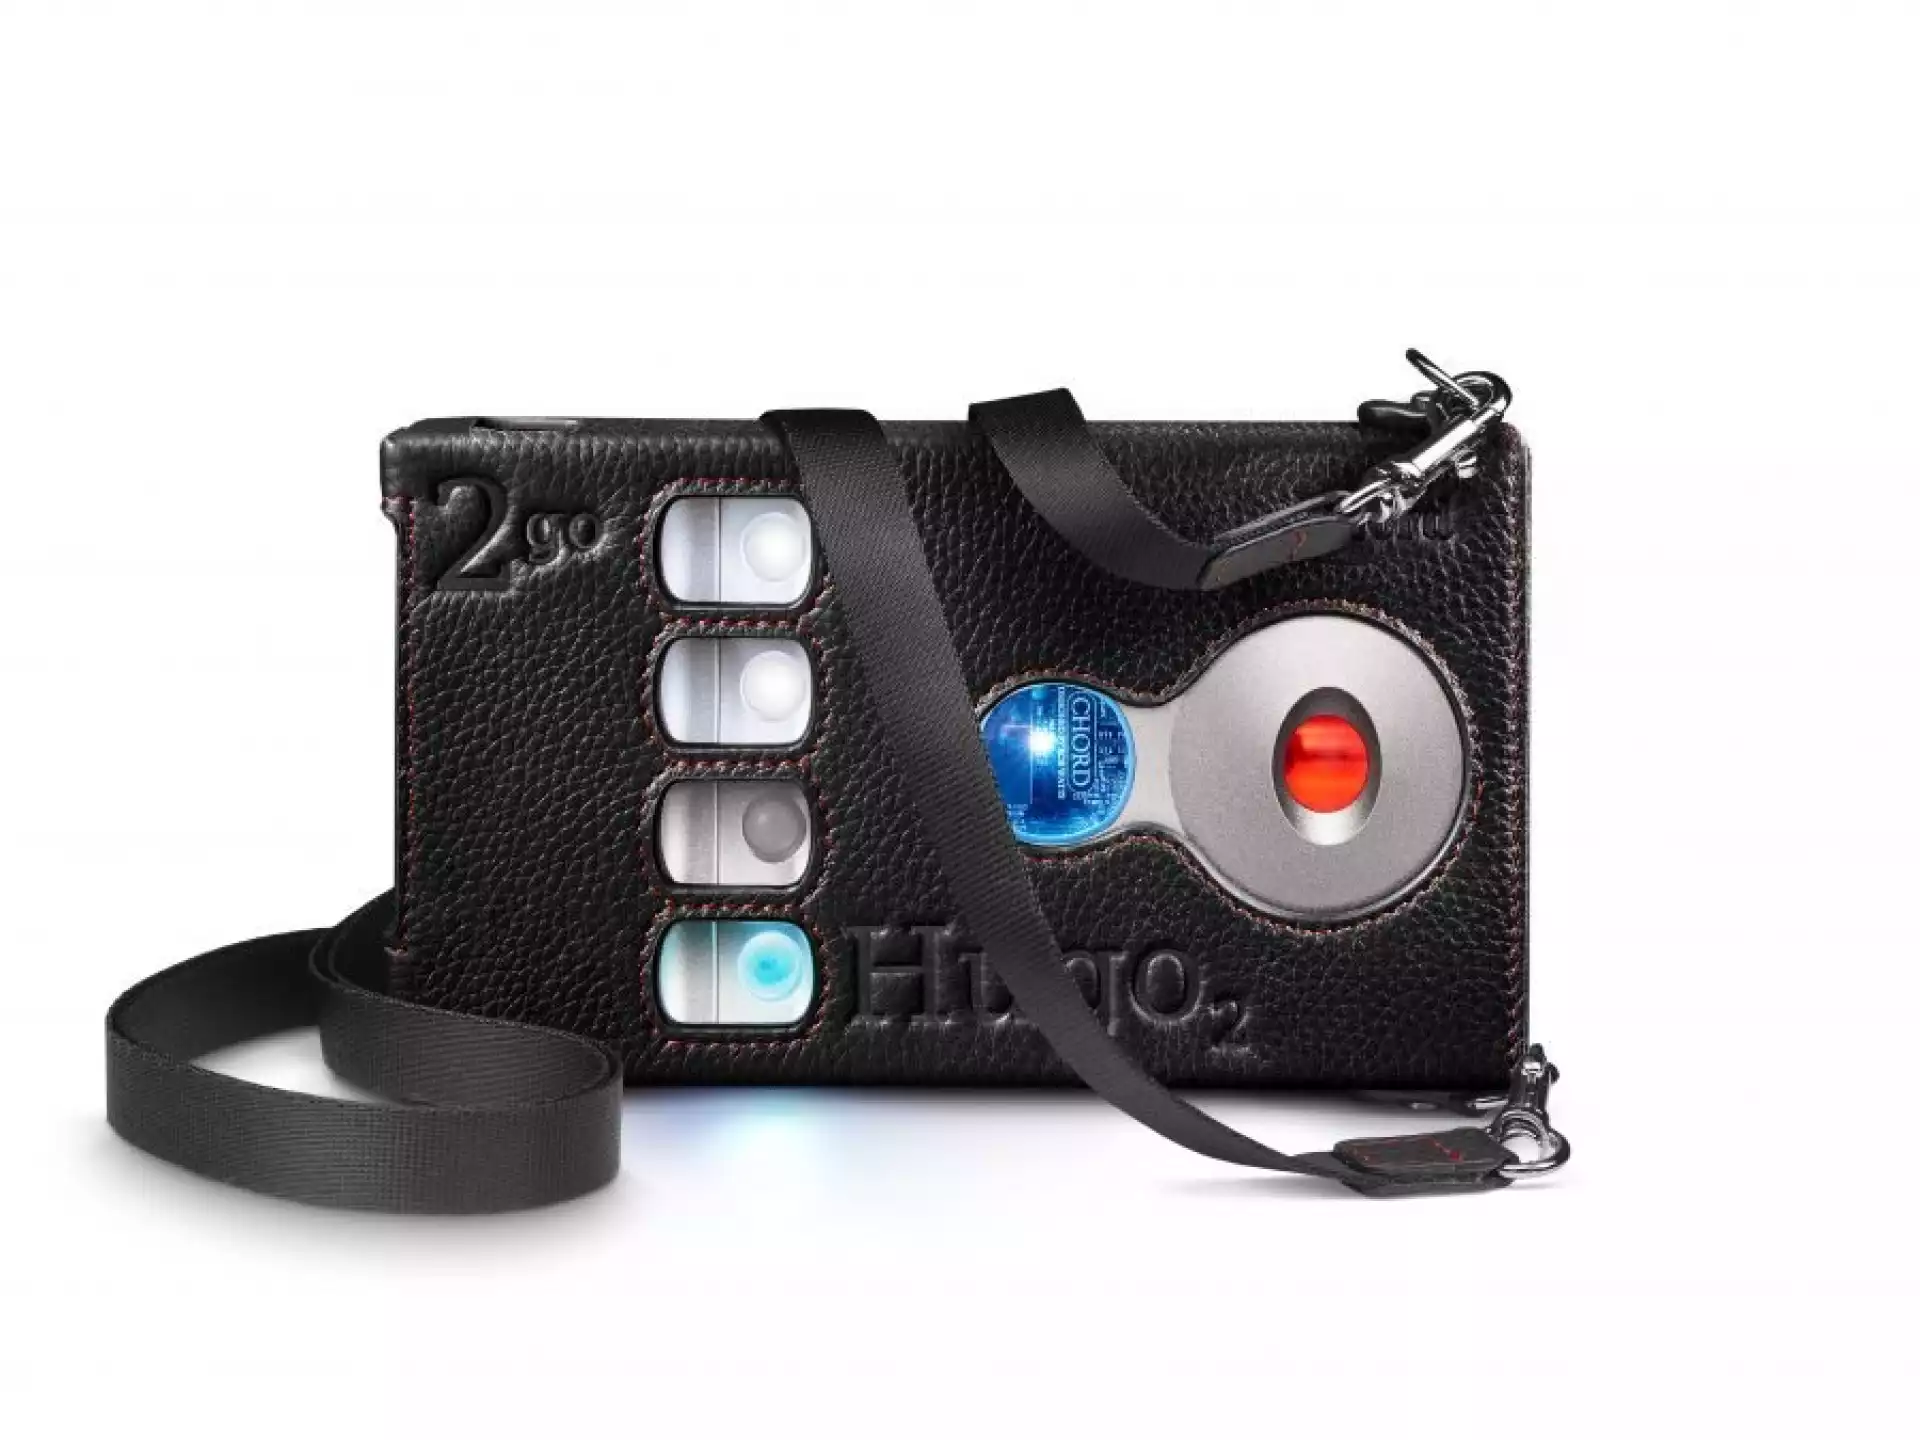 Hugo 2/2go - Premium leather carry case